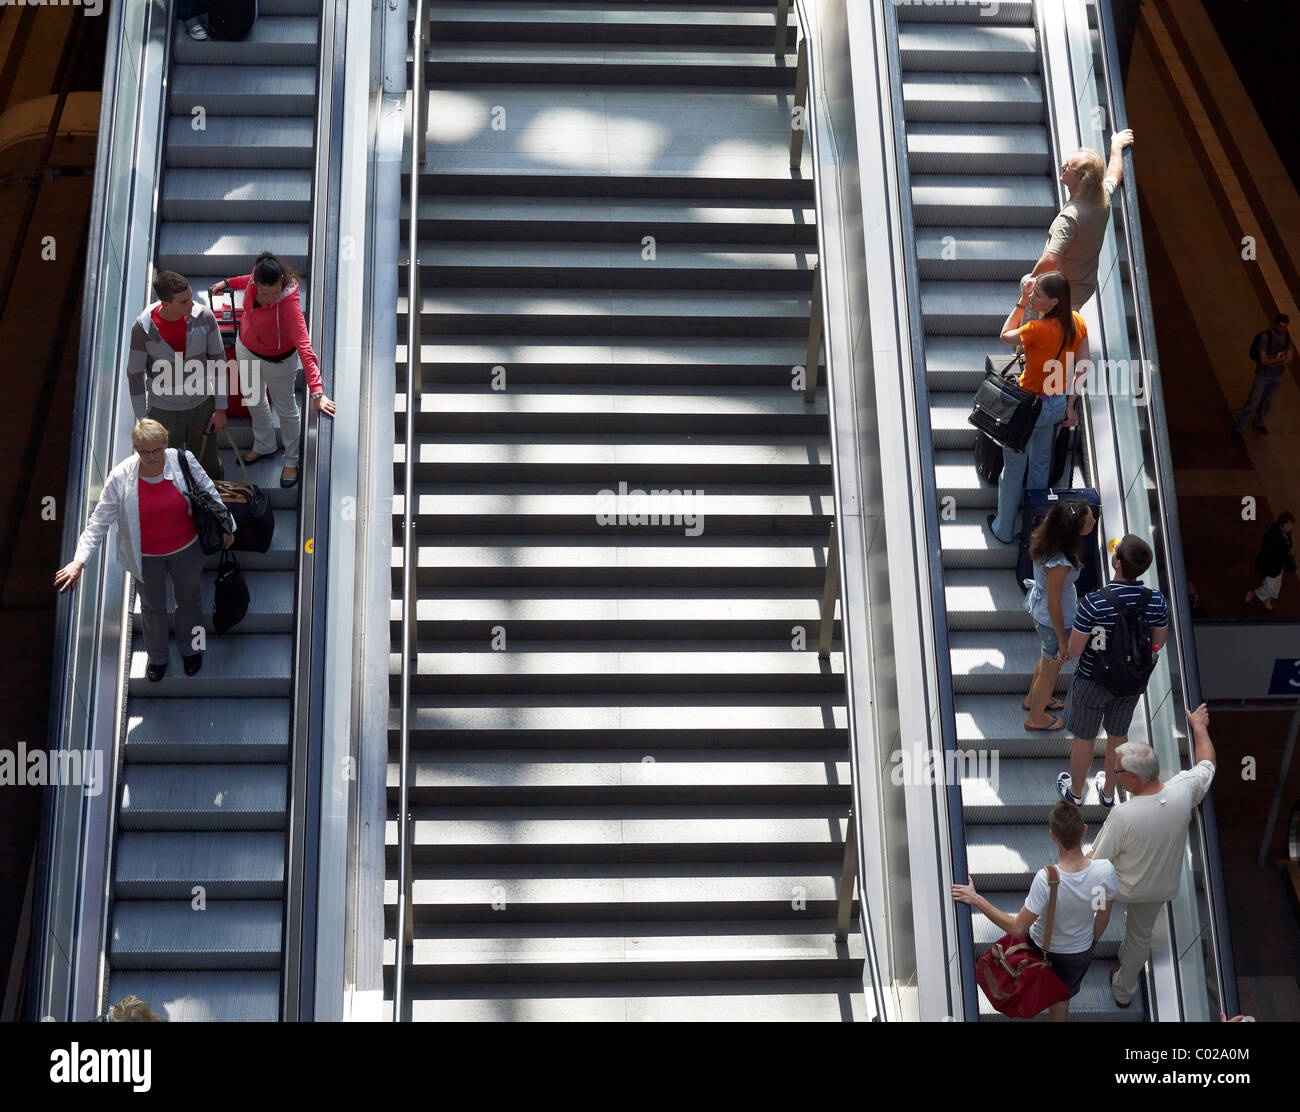 Les passagers voyageant sur un escalator, la gare centrale de Berlin, Berlin, Germany, Europe Banque D'Images